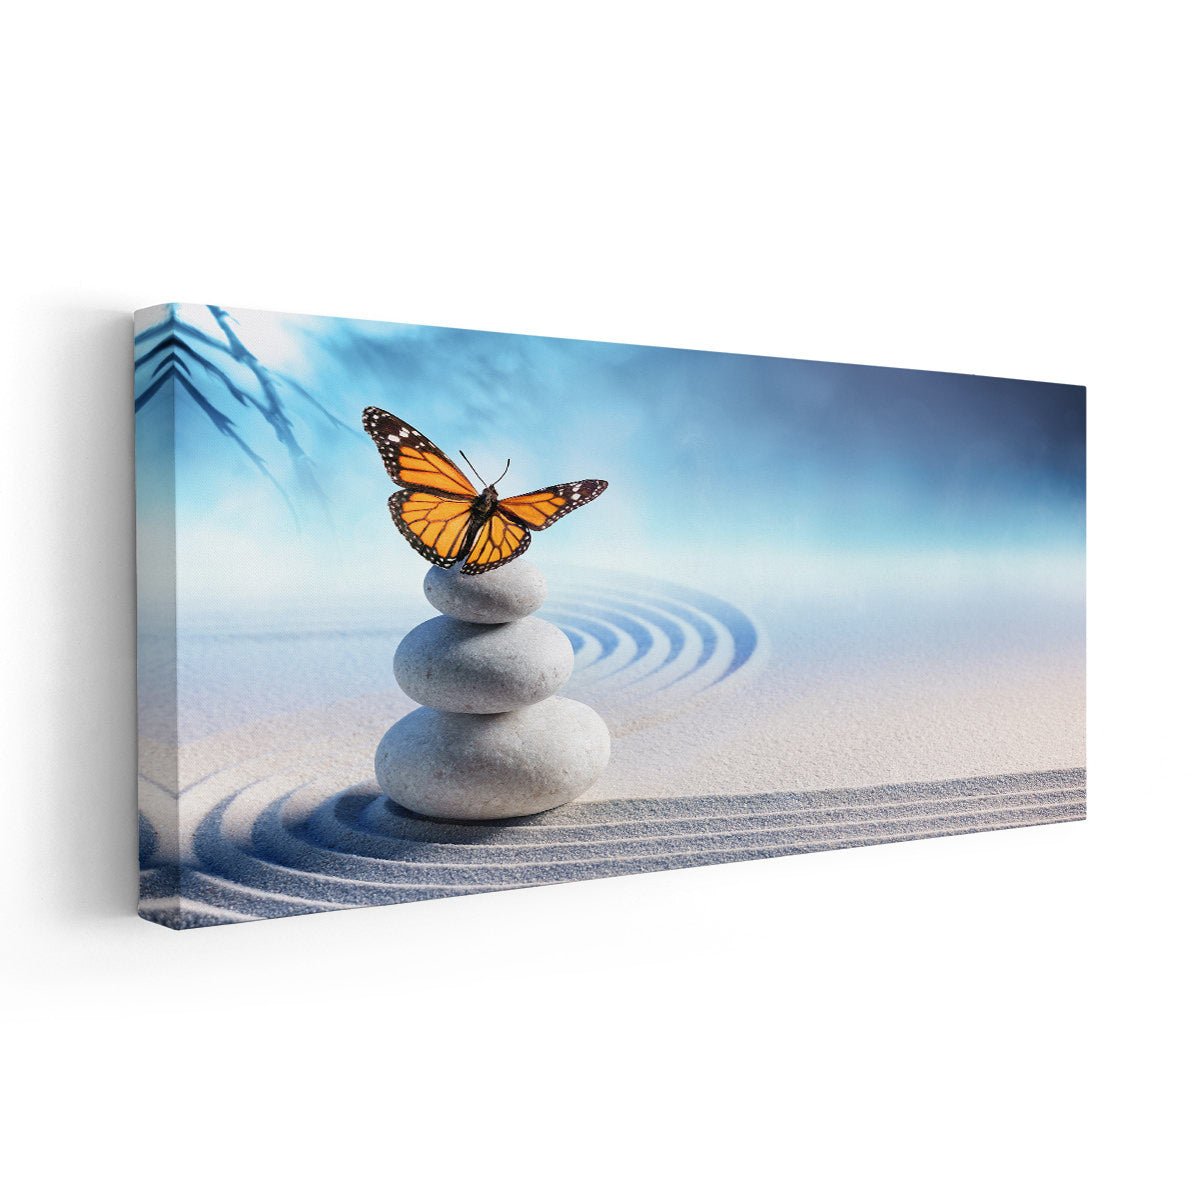 Butterfly Zen Garden Canvas Wall Art